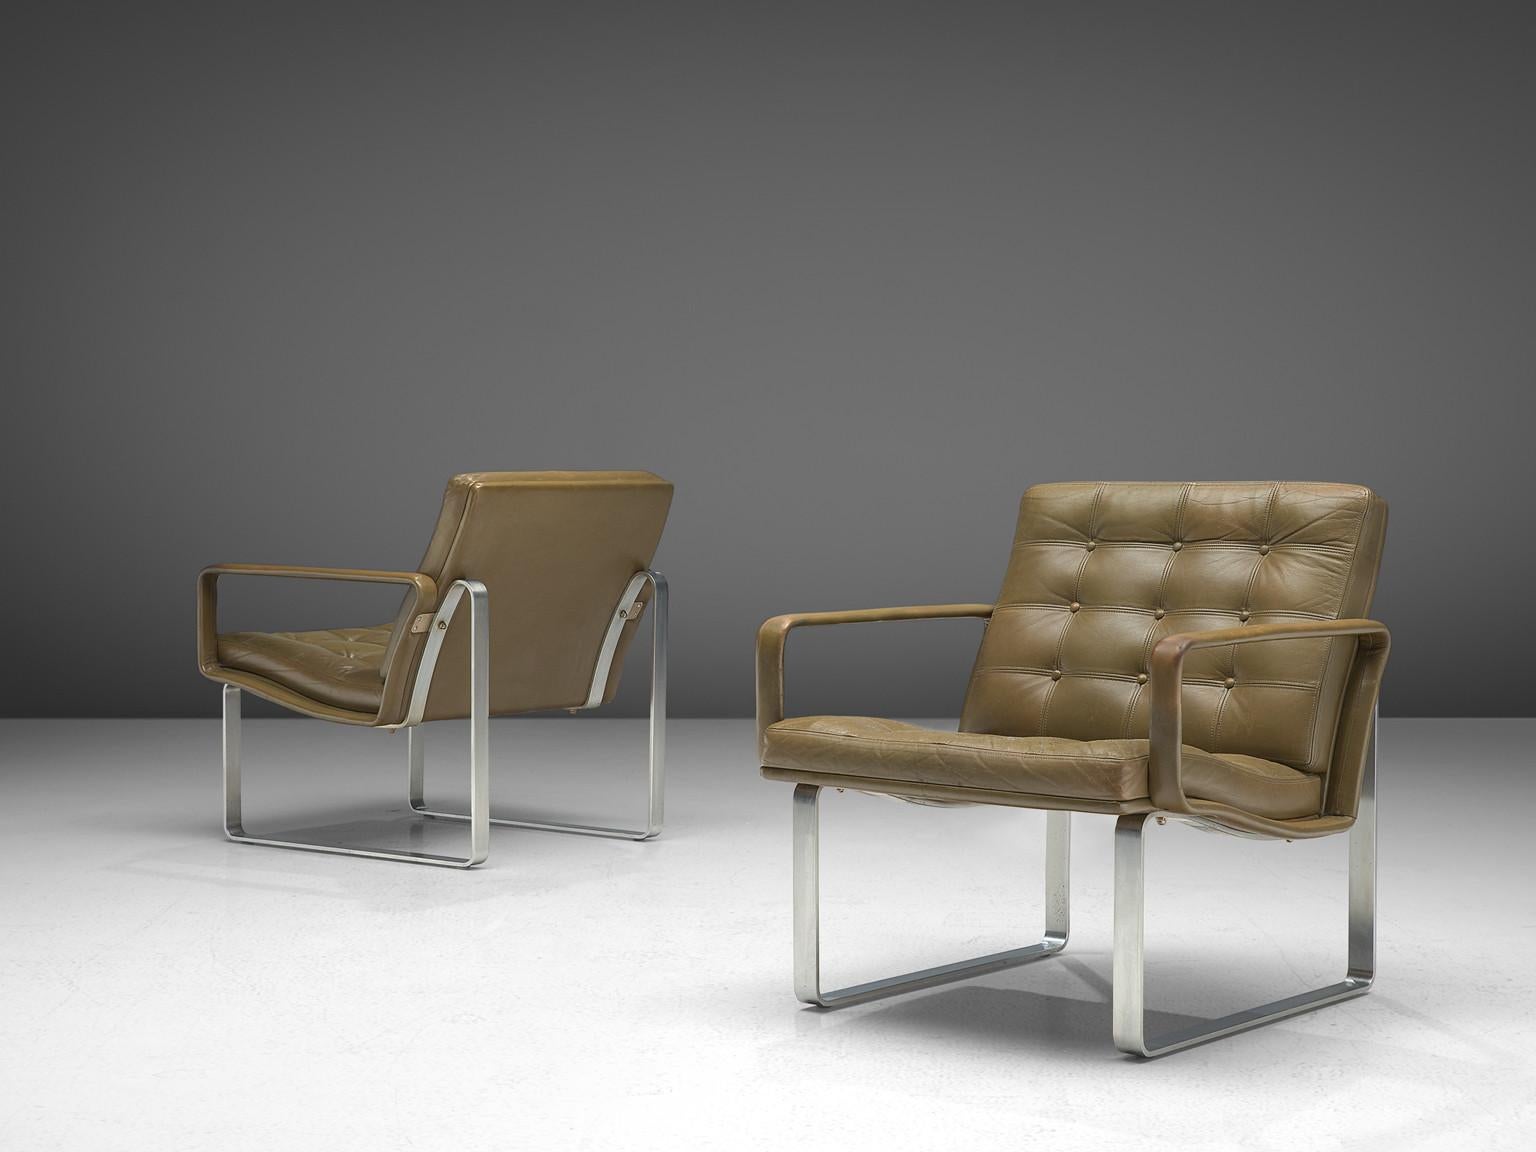 Ole Gjerløv-Knudsen & Torben Lind pour France & Søn, paire de fauteuils, métal chromé et cuir, Danemark, 1962 

Ces chaises longues ont été conçues par Ole Gjerløv-Knudsen & Torben Lind dans le cadre de la série Moduline créée en 1961. Ce qui est